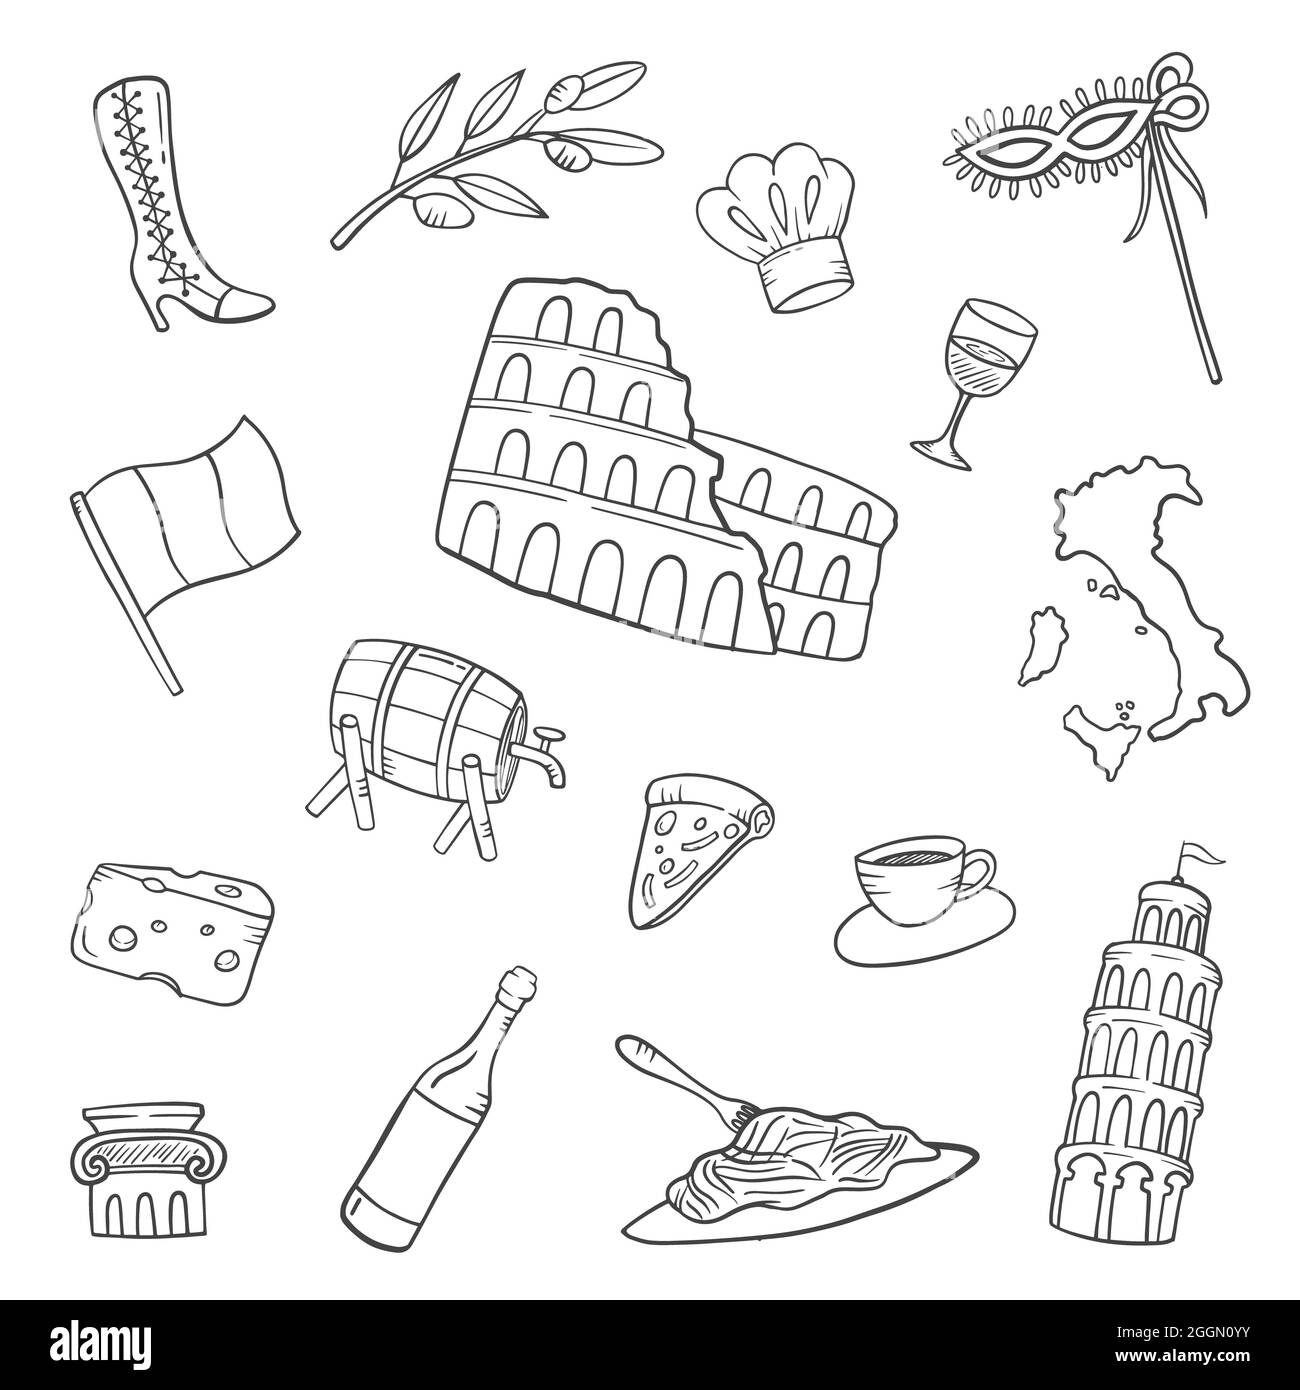 italie pays nation doodle collections de jeux dessinées à la main avec dessin vectoriel de style noir et blanc Banque D'Images